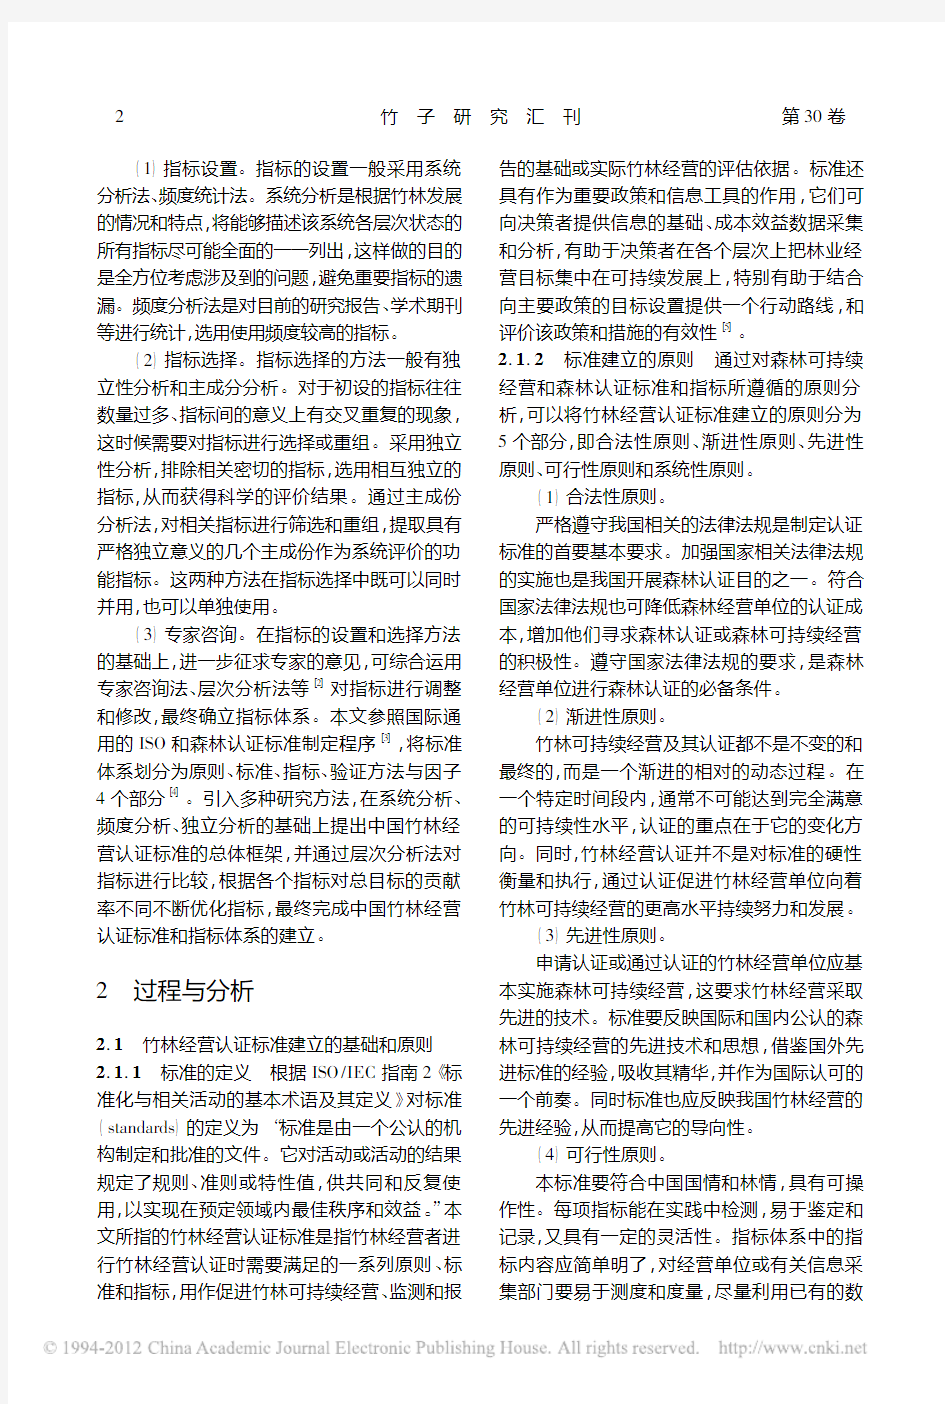 基于层次分析法构建中国竹林经营认证标准体系